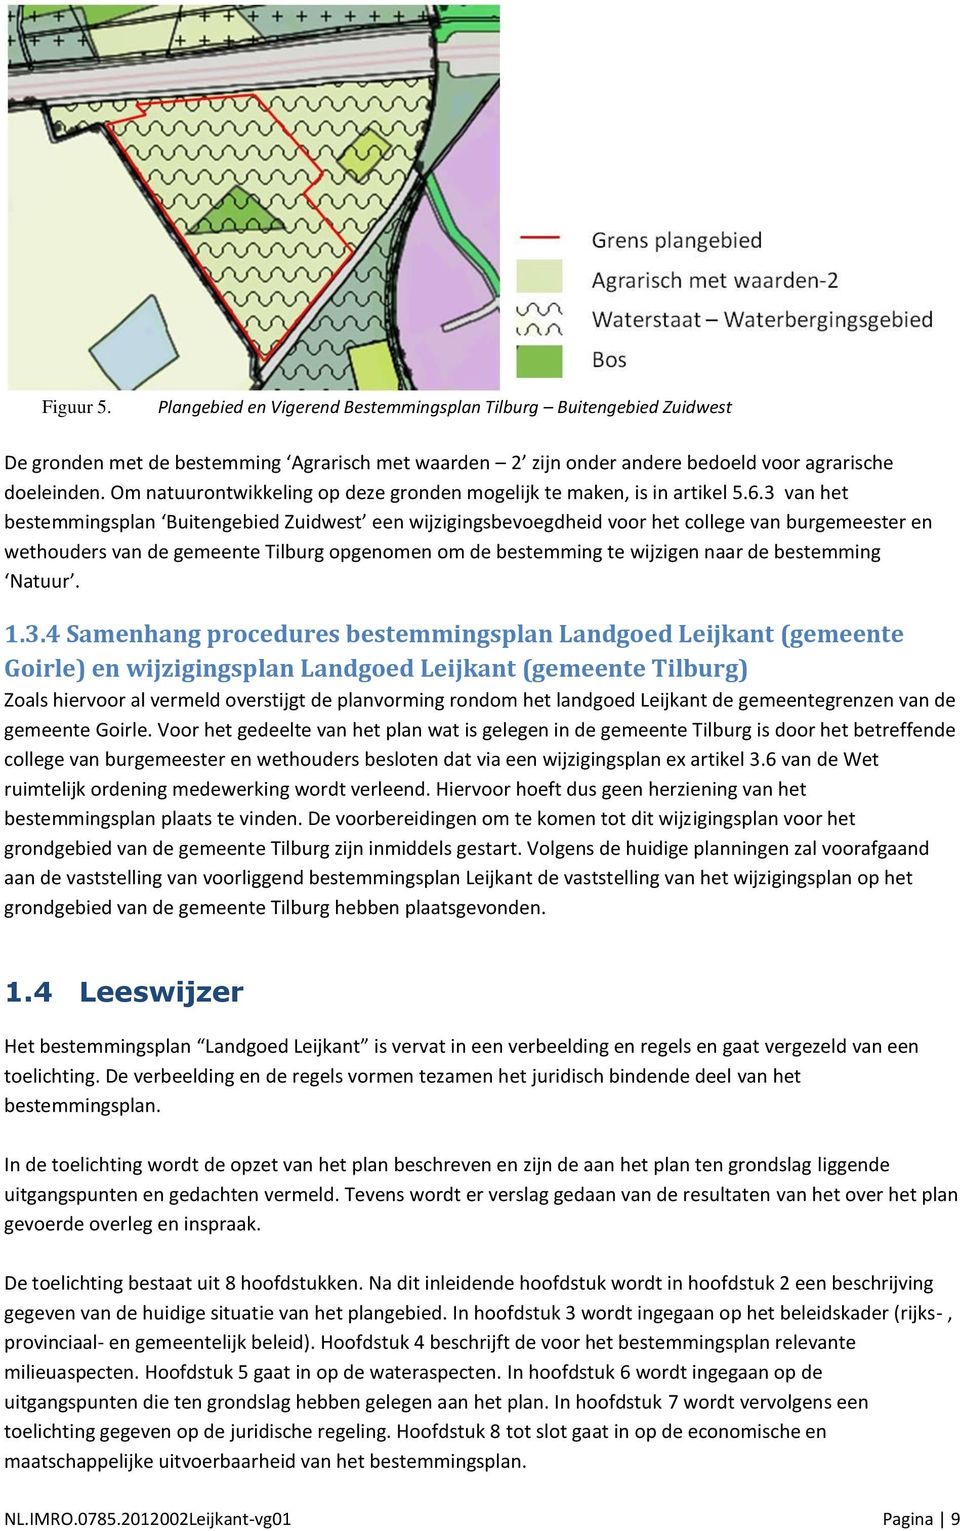 3 van het bestemmingsplan Buitengebied Zuidwest een wijzigingsbevoegdheid voor het college van burgemeester en wethouders van de gemeente Tilburg opgenomen om de bestemming te wijzigen naar de